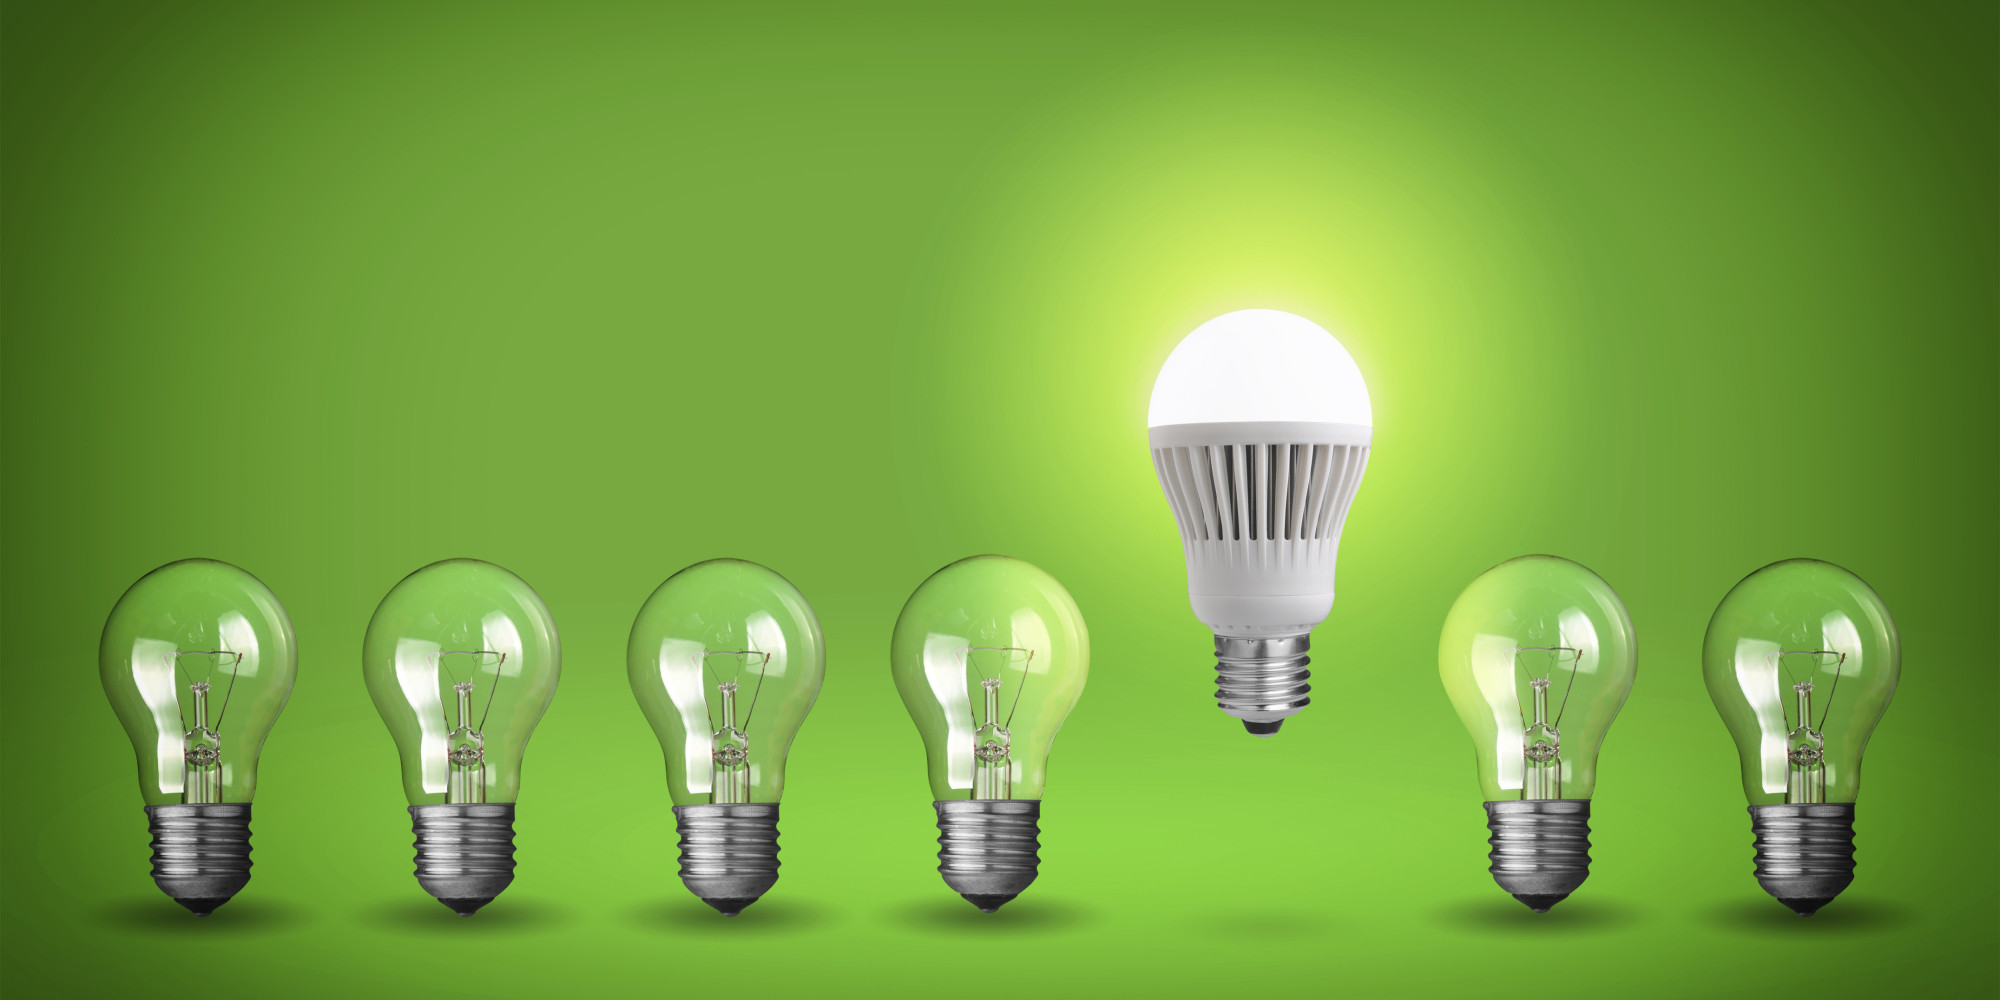 best light bulbs for green screen